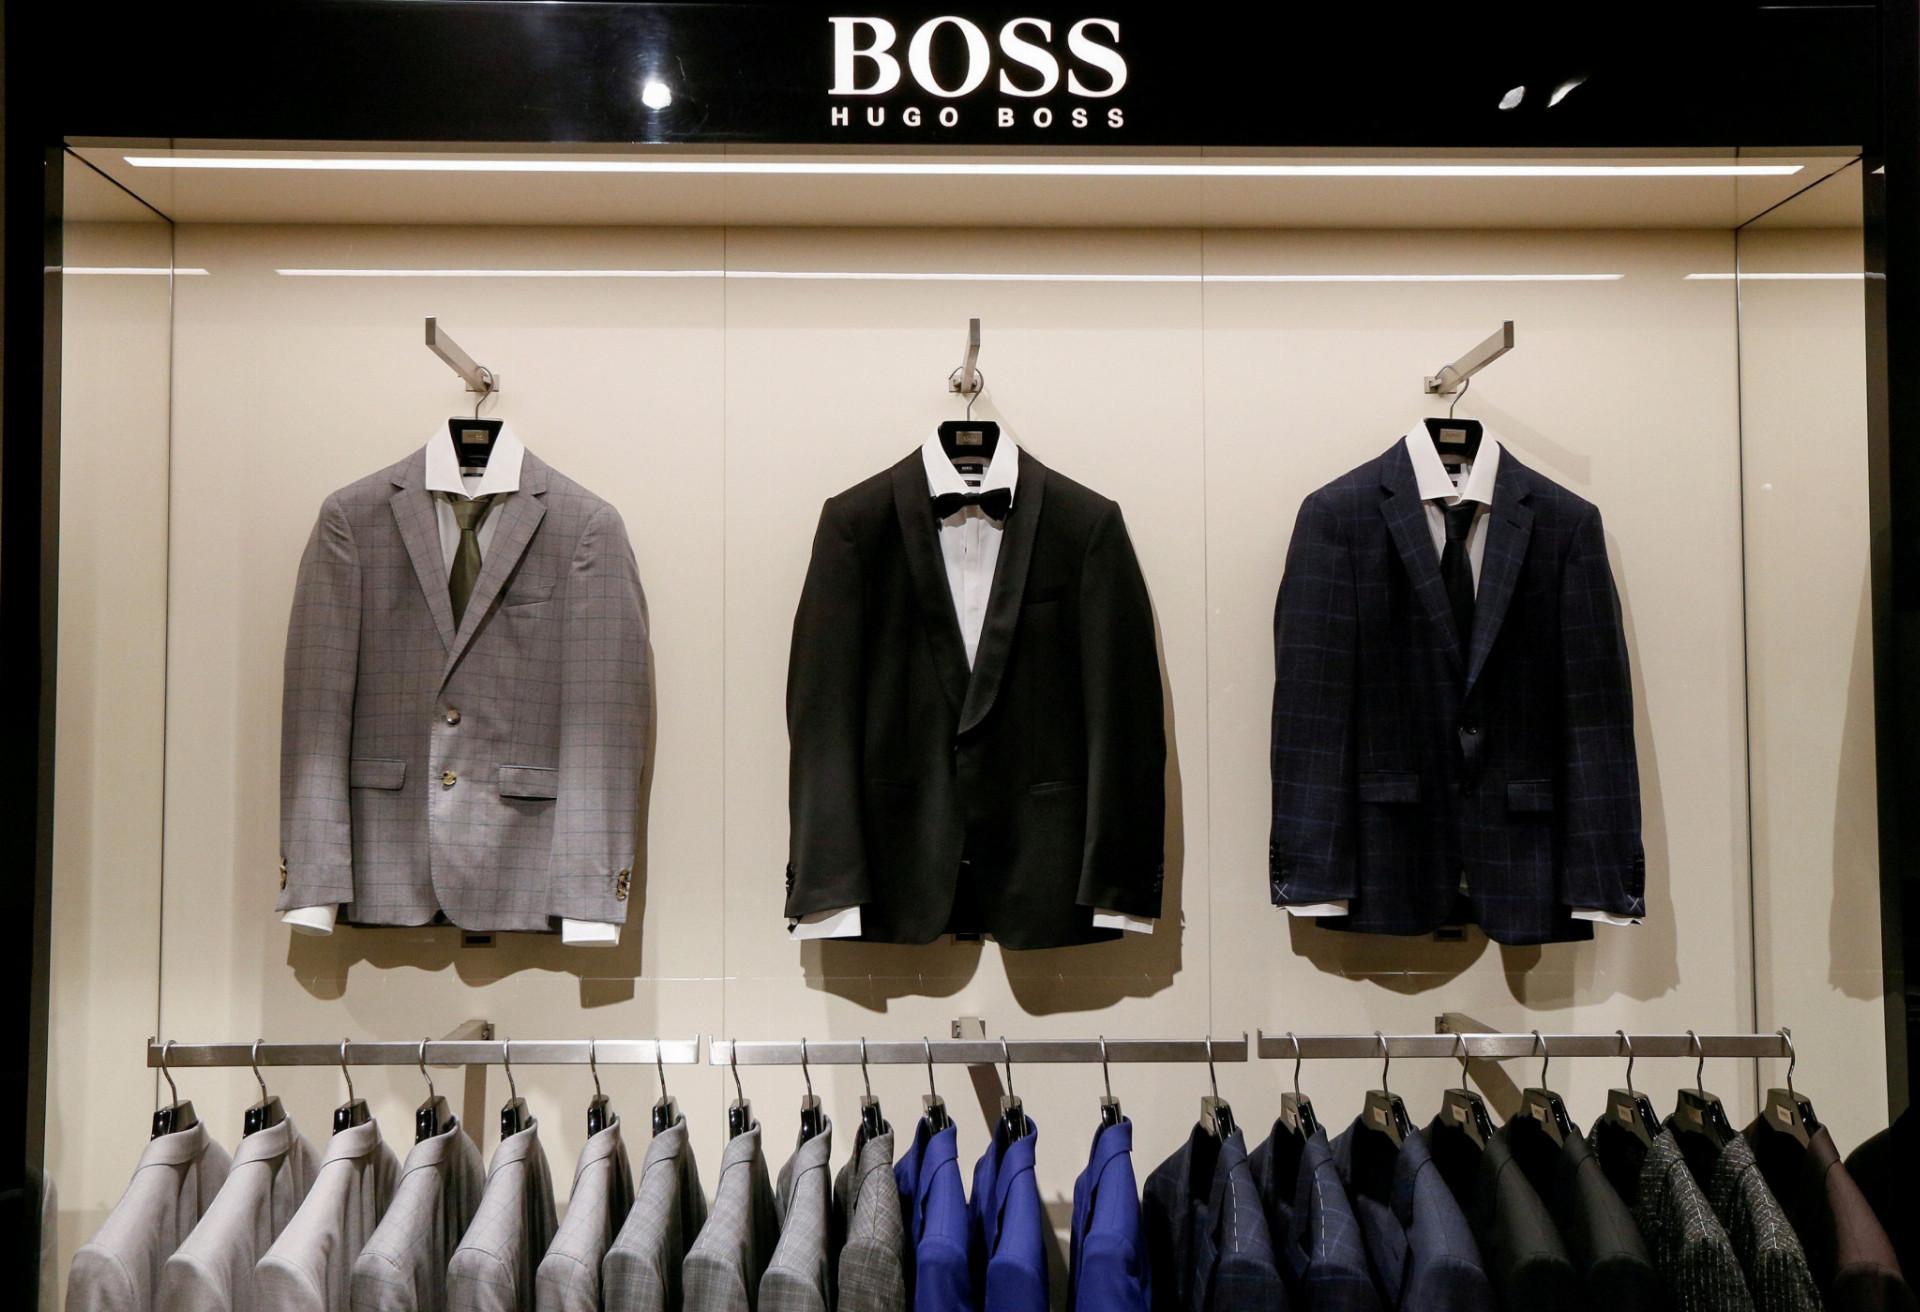 Došlo už aj na predajne Hugo Boss z retailového reťazca Premium Fashion Brands, ktorý čelí viacerým návrhom na konkurz.